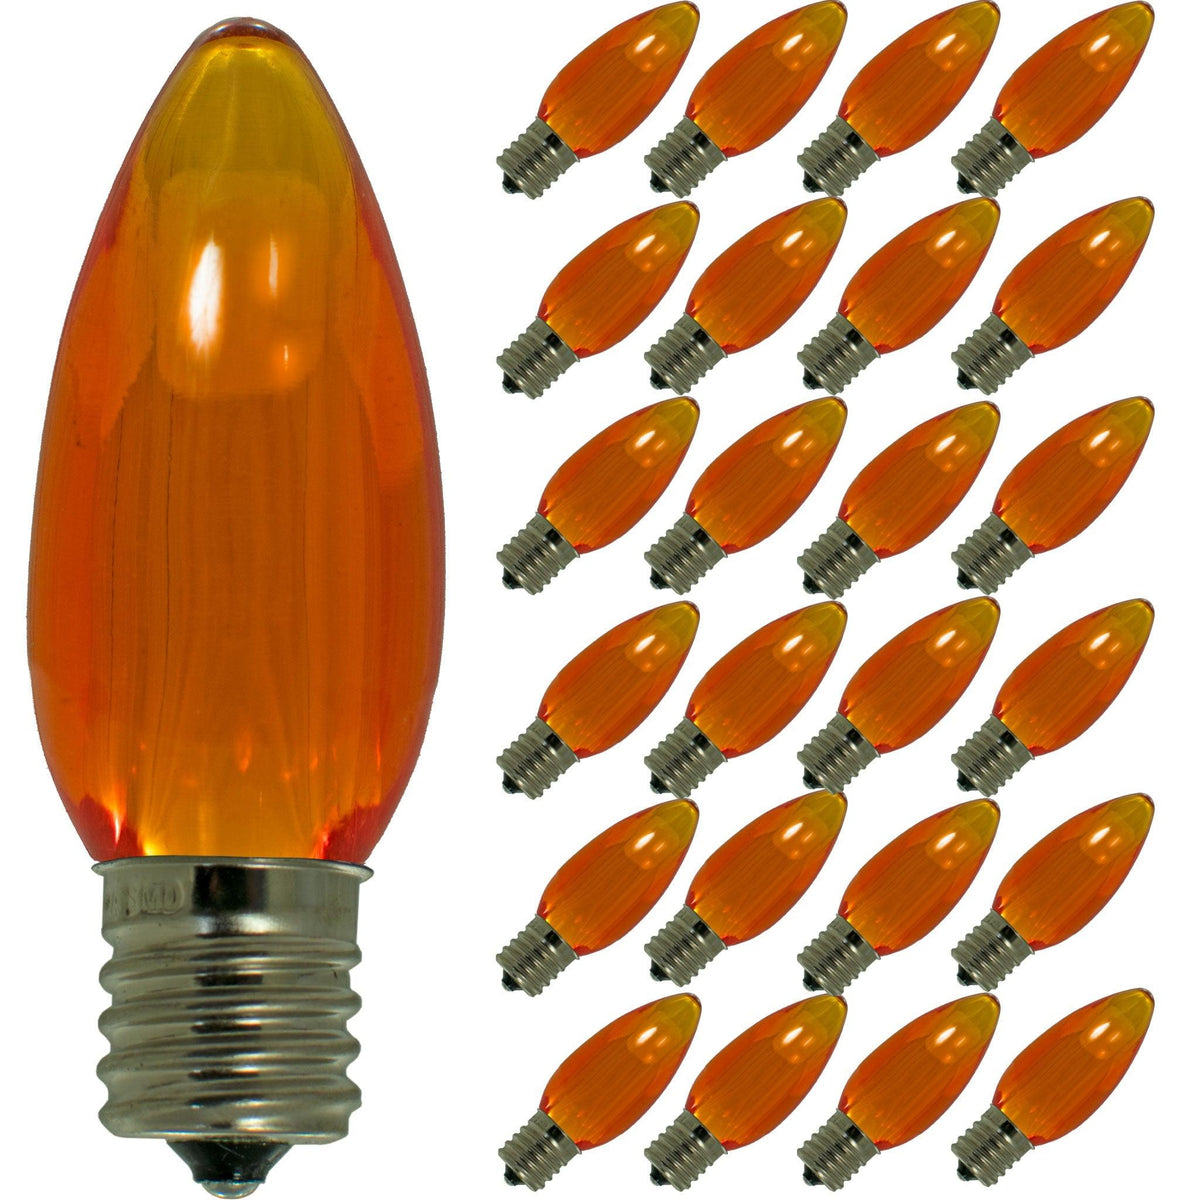 Orange LED Light Bulbs - Lee Display